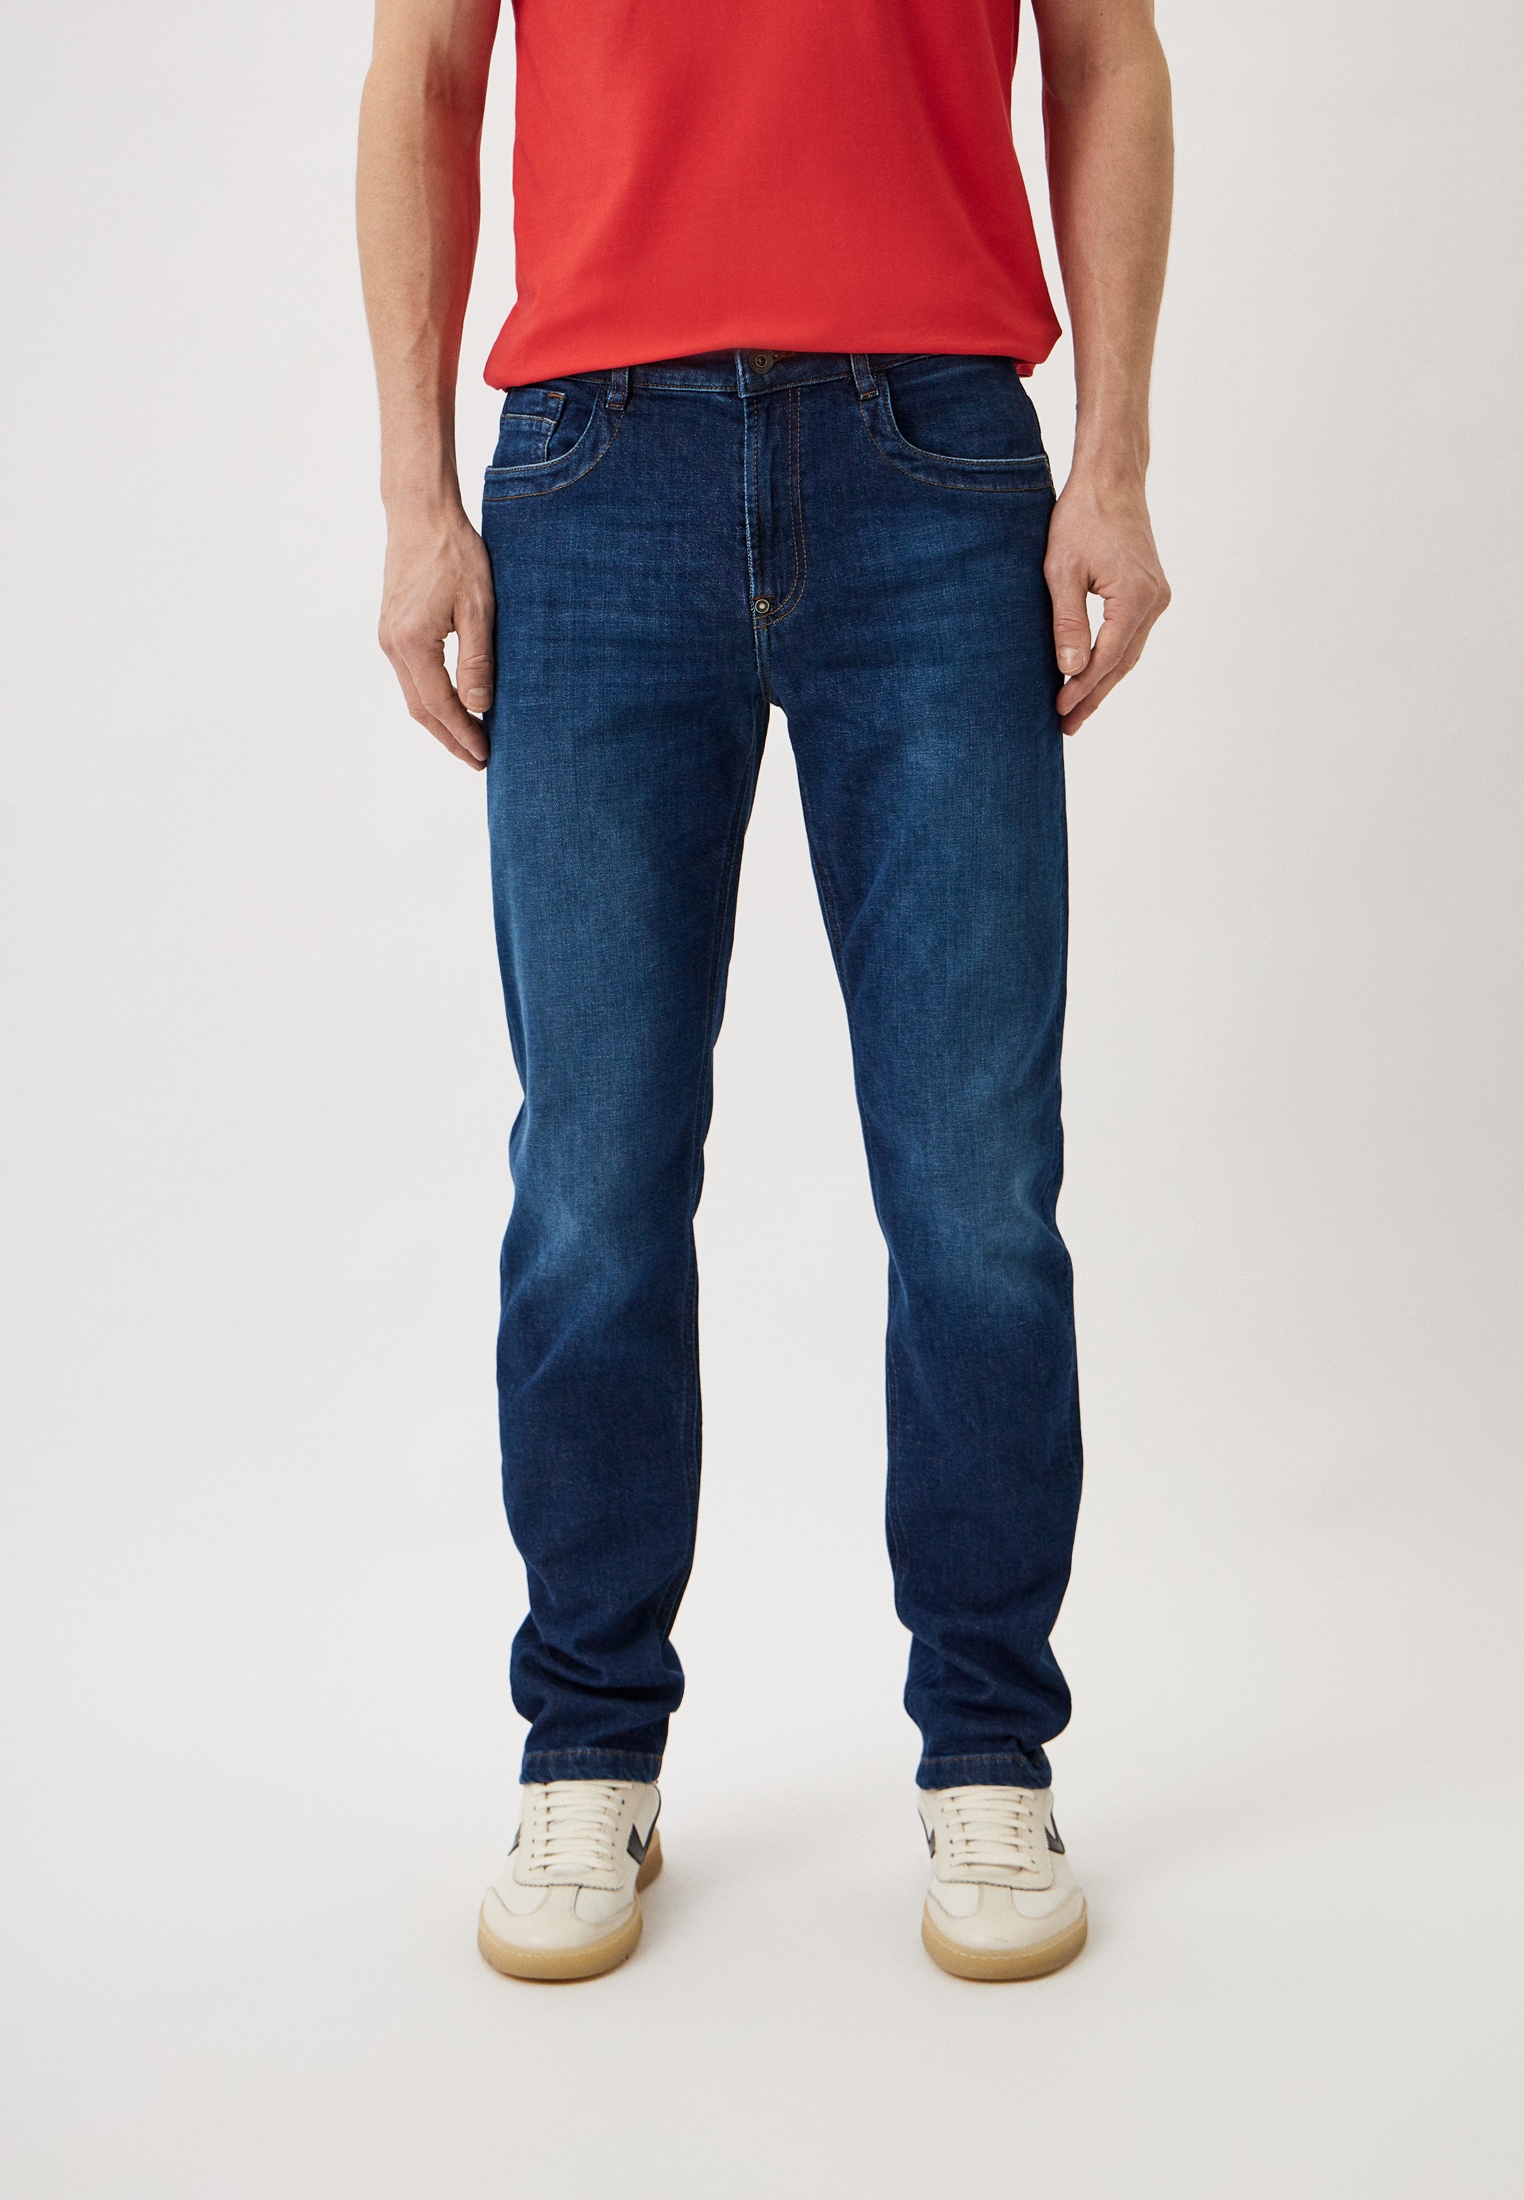 Мужские прямые джинсы Bikkembergs (Биккембергс) CQ10222S3976: изображение 5